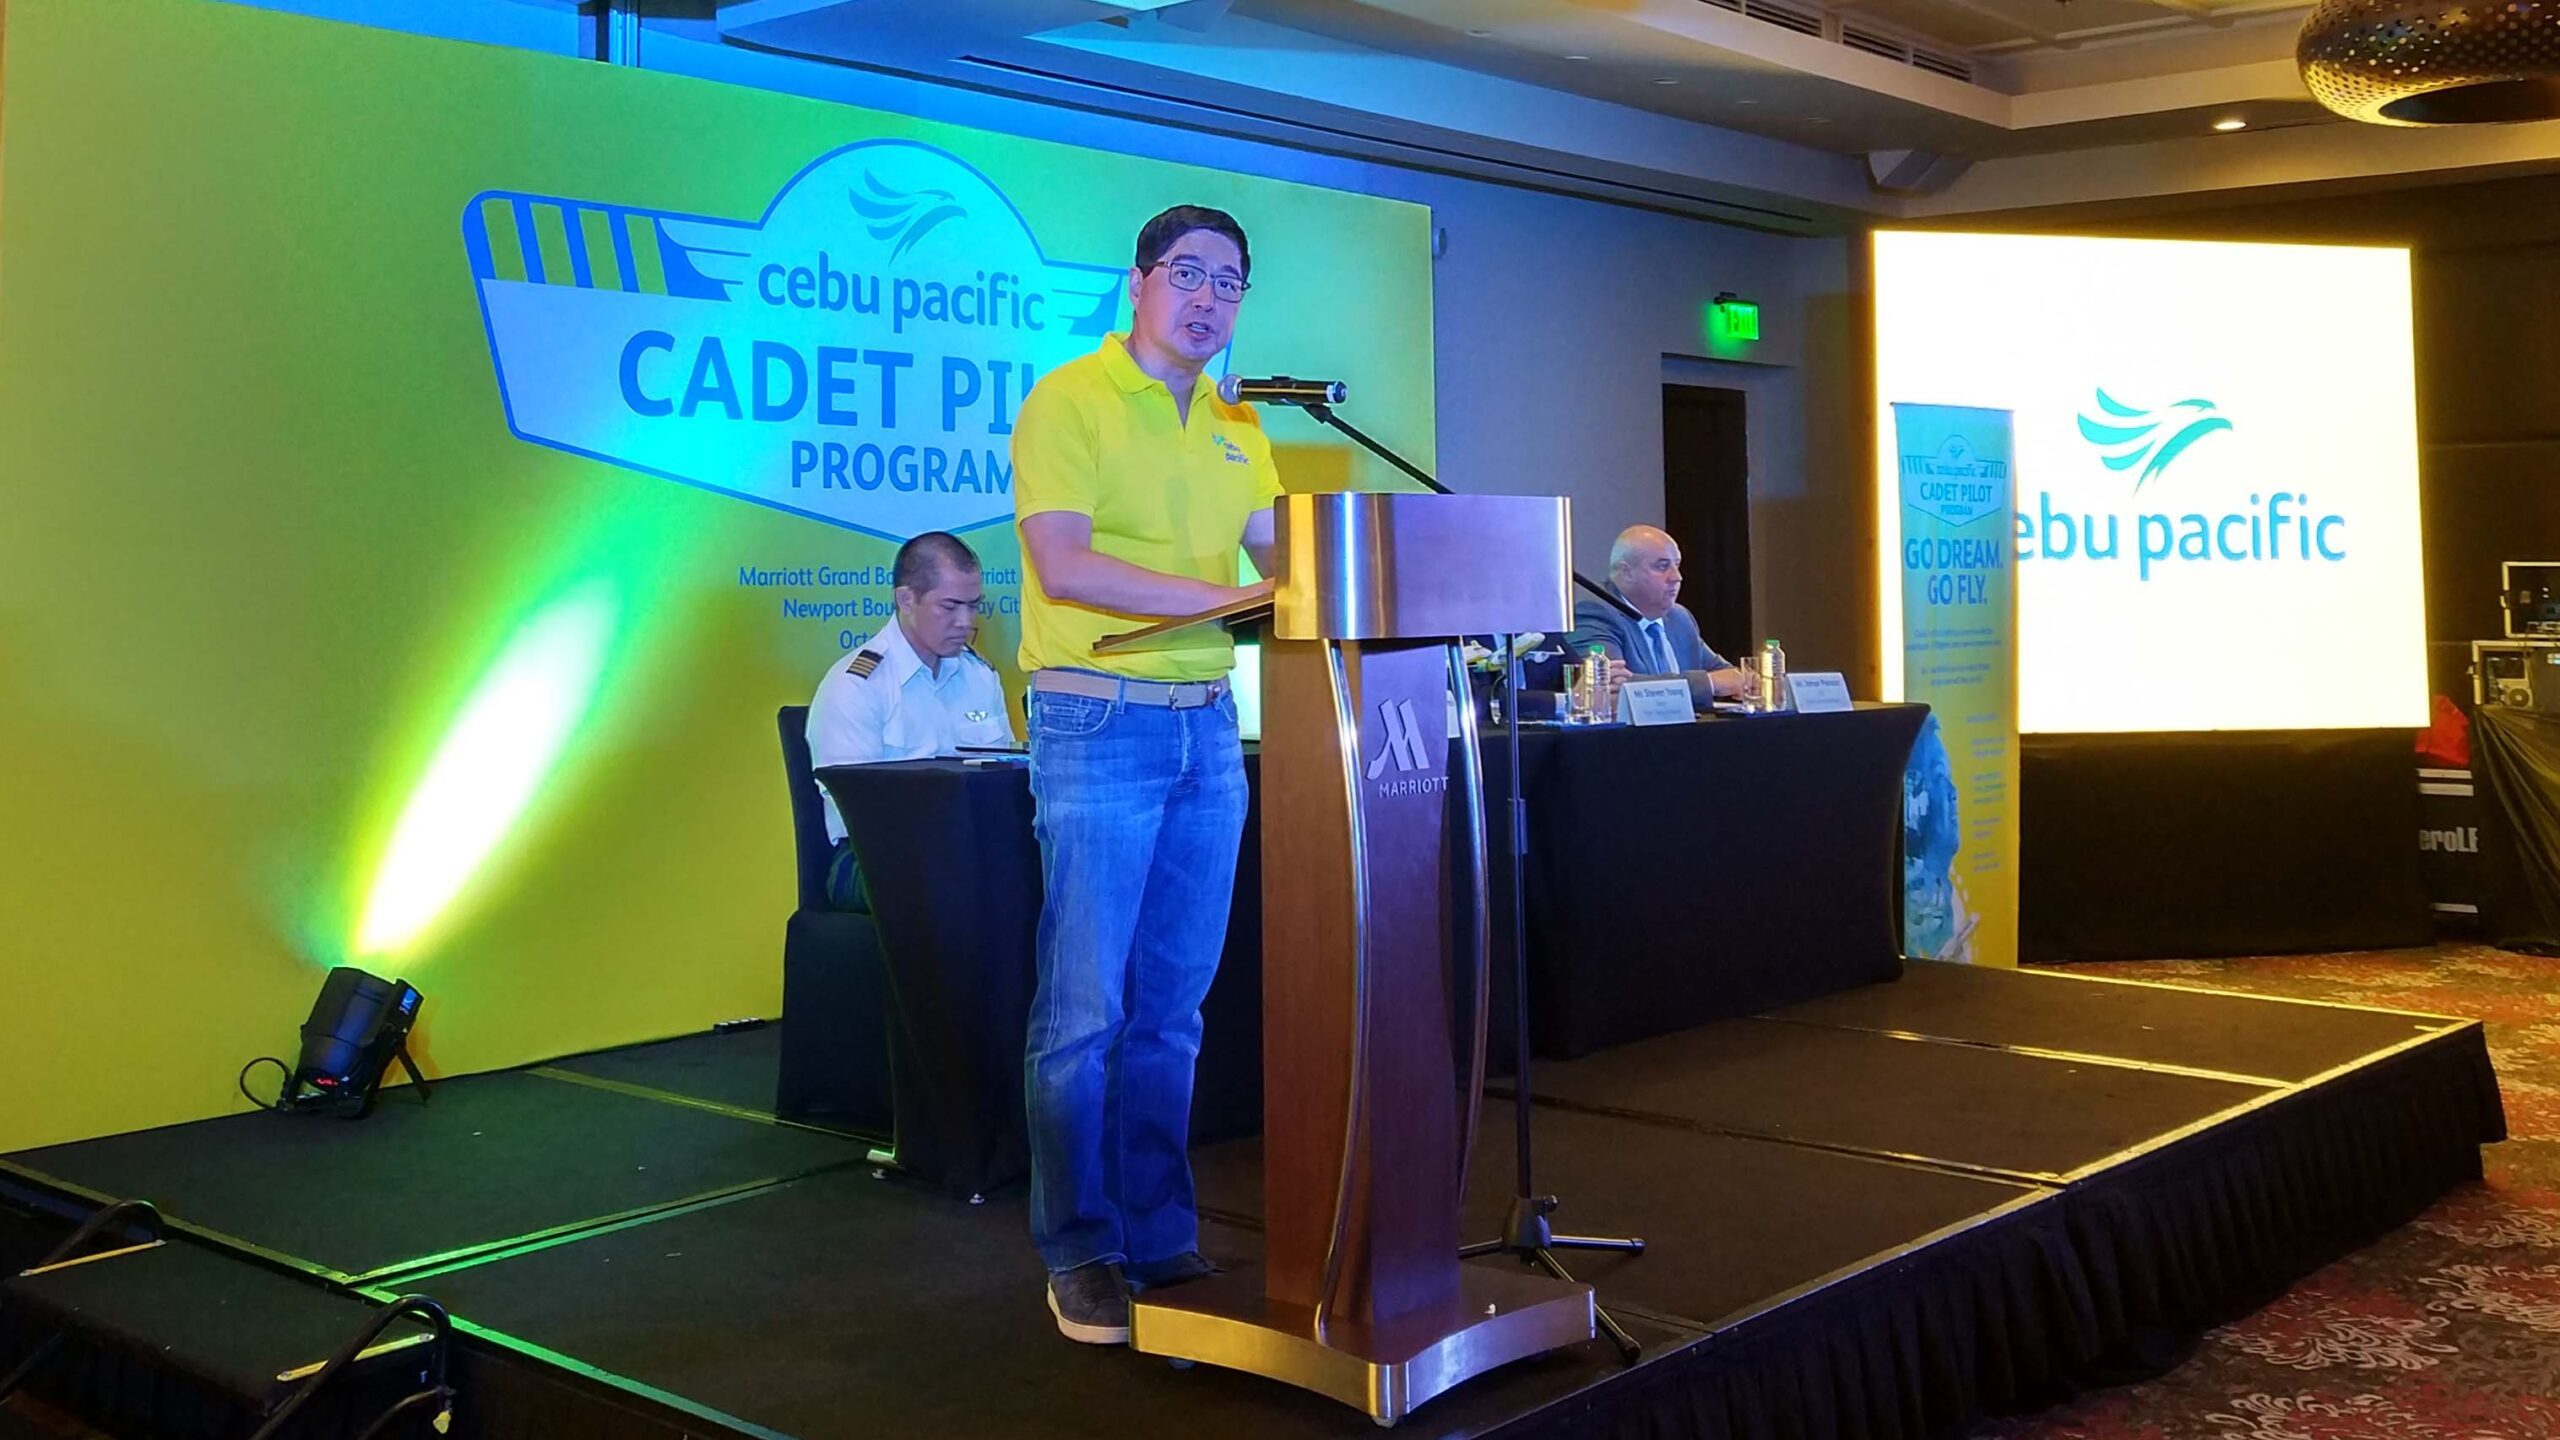 Cebu Pacific launches program to train future Filipino pilots in Australia